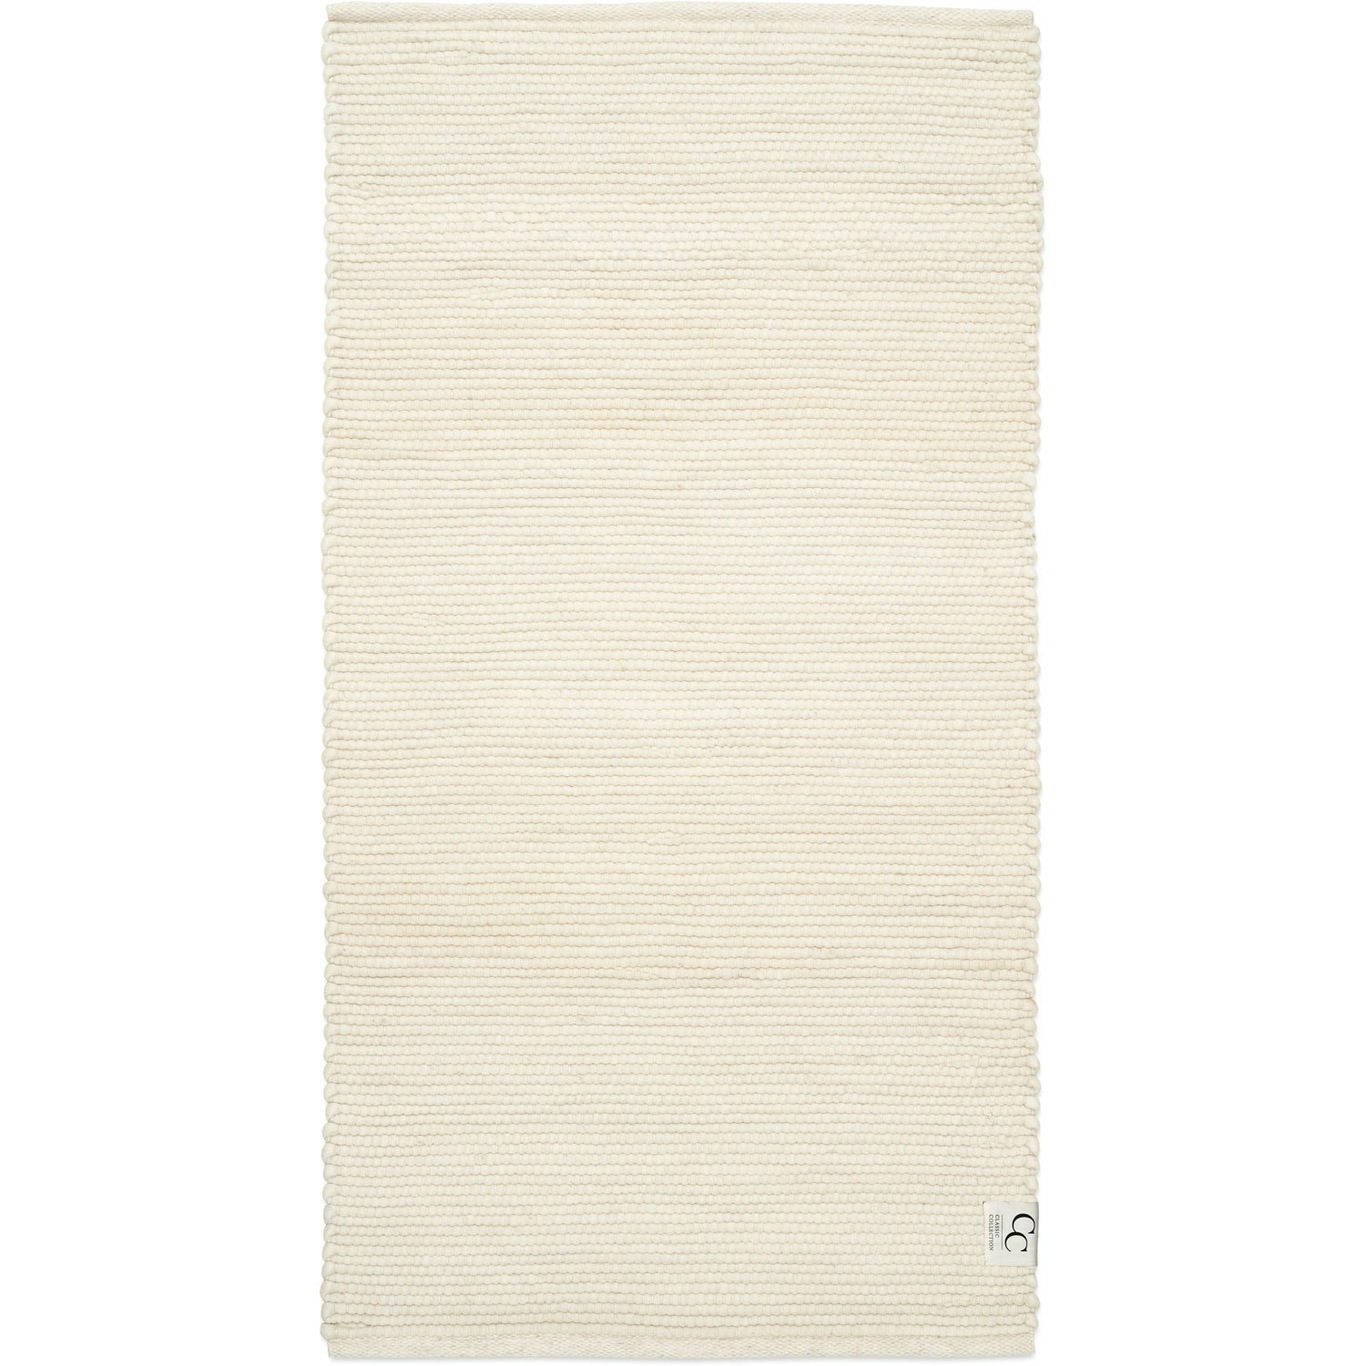 Merino Teppich 80x150 cm, Weiß